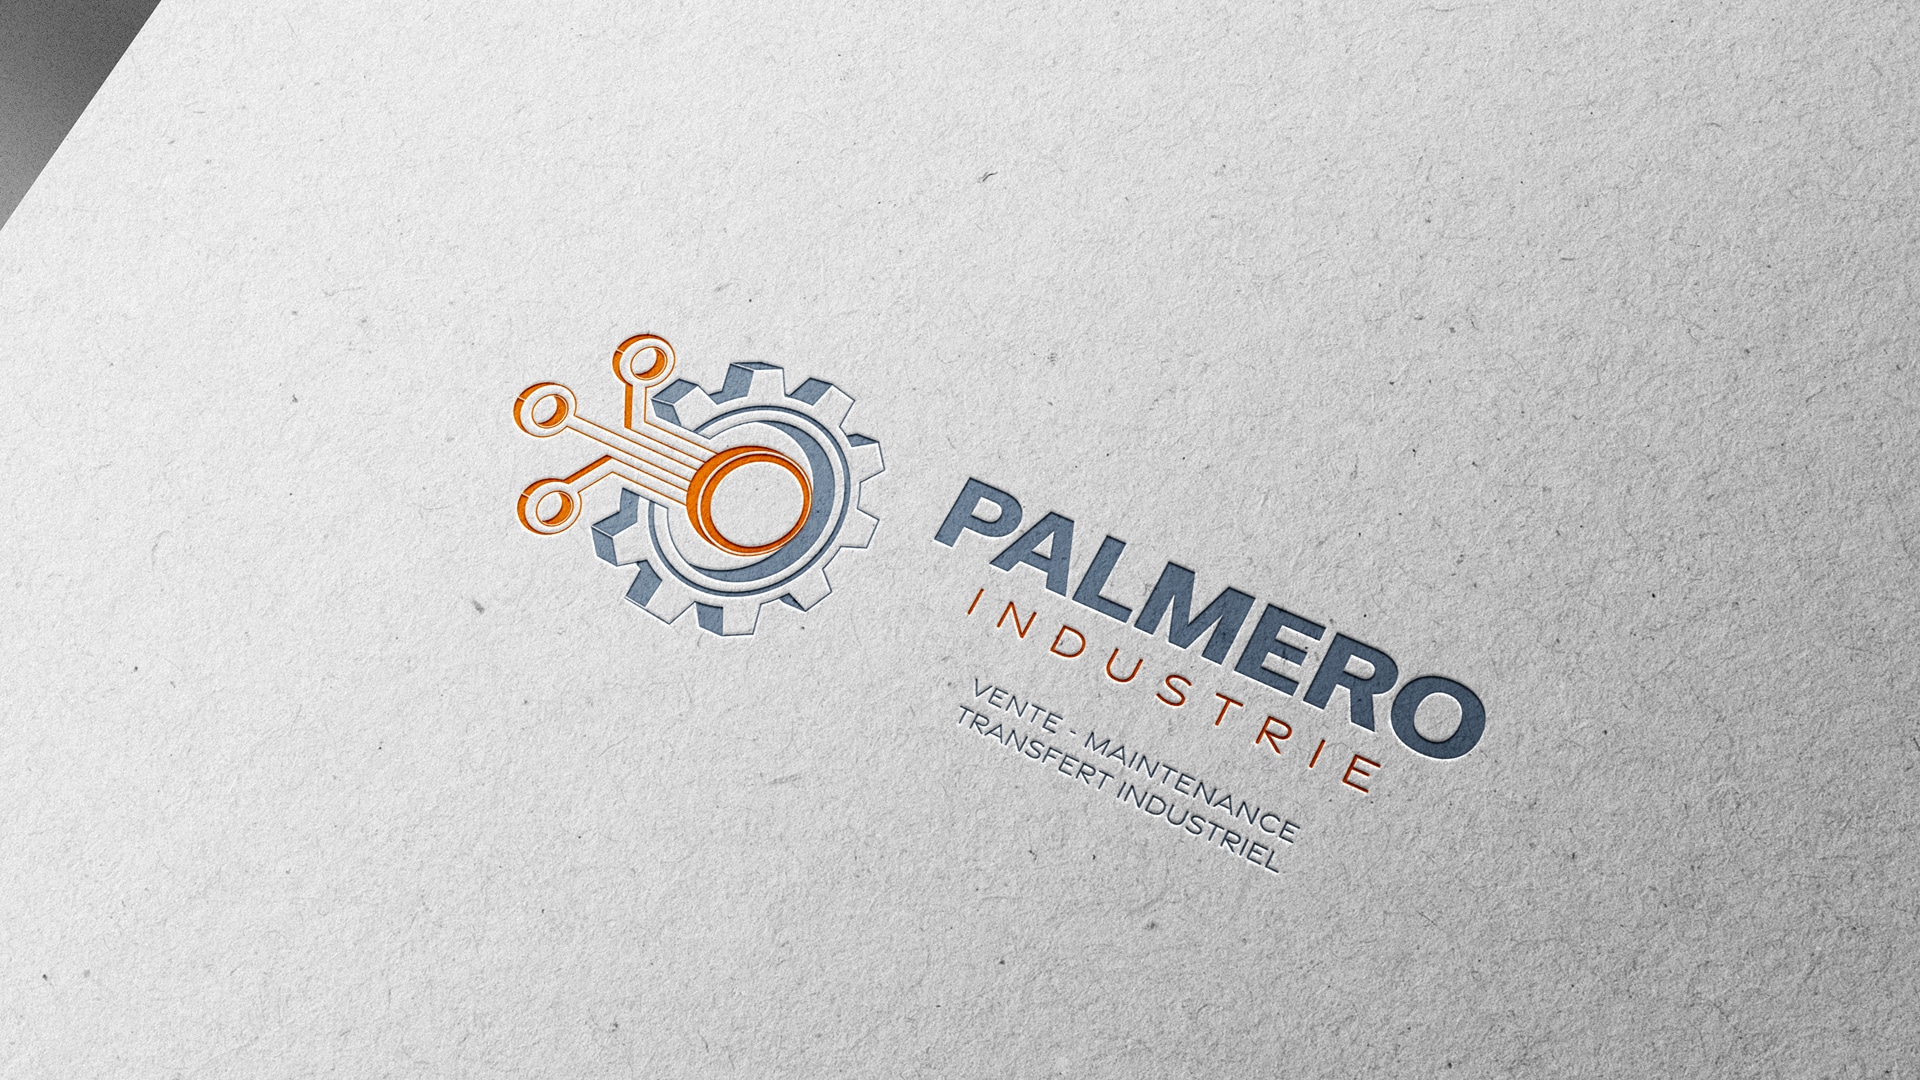 Mockup Palmero mettant en valeur le nouveau logo sur papier suite à la refonte d'identité visuelle de la marque.